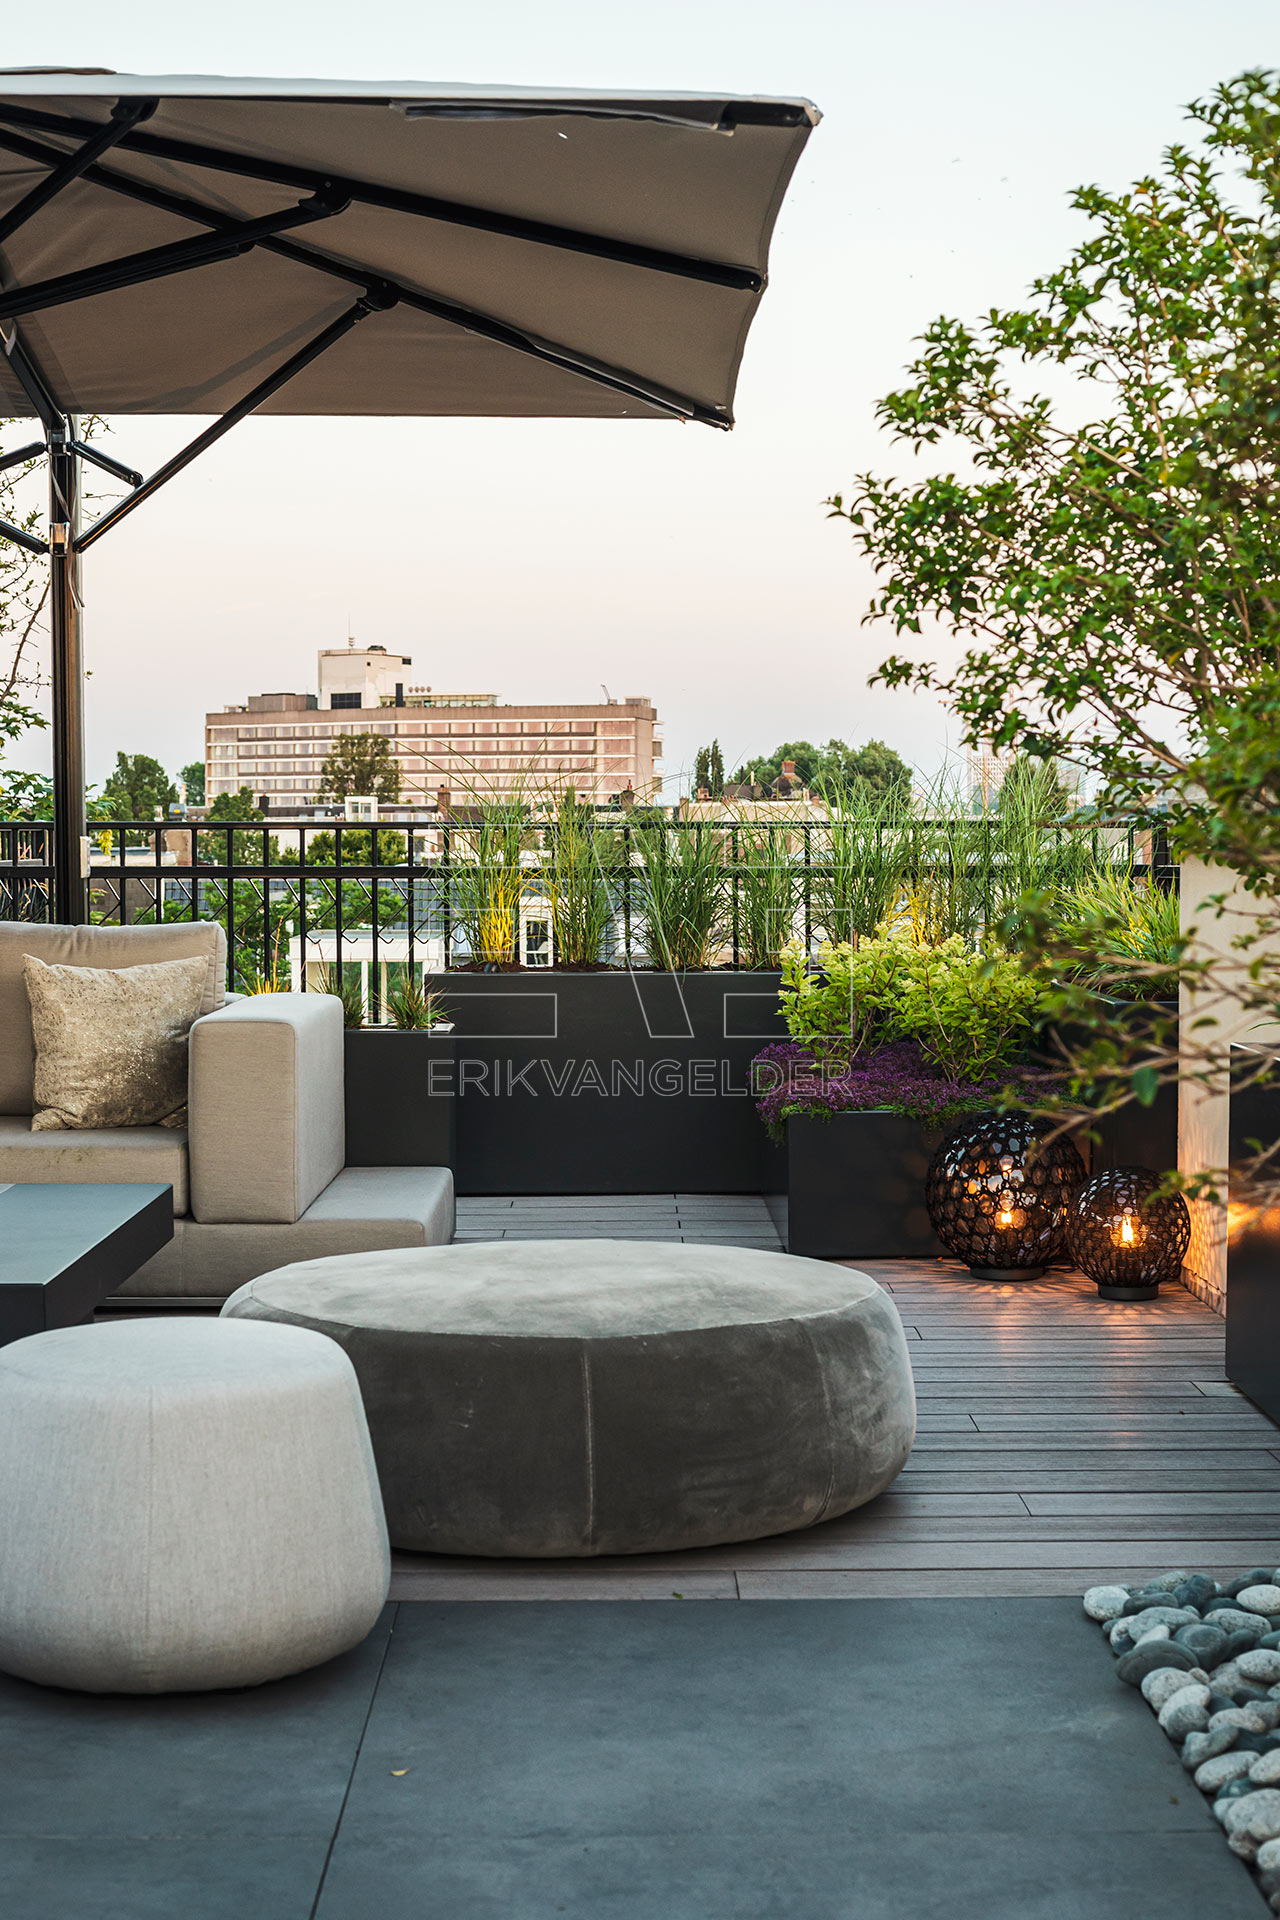 Sfeerbeeld poef lounge dakterras erikvangelder tuindesign tuinarchitect exclusive gardens daktuin roof garden luxury high end